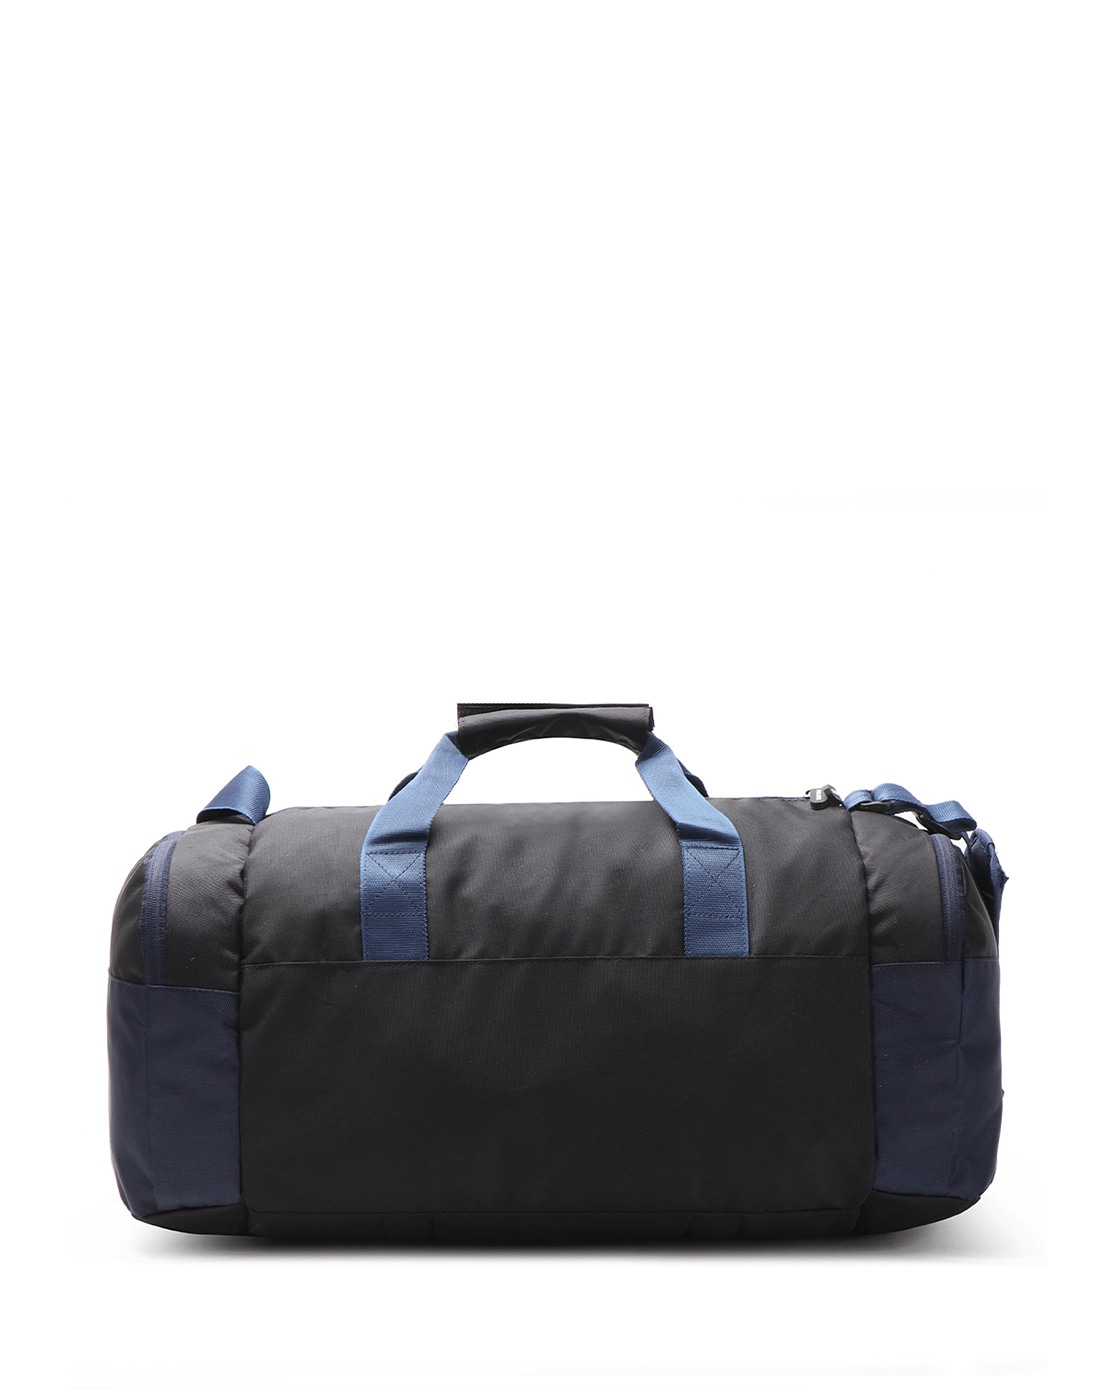 Buy Viviza Duffle BagViviza Water Resistance Polyester Navy Blue Duffle Bag  at Amazonin